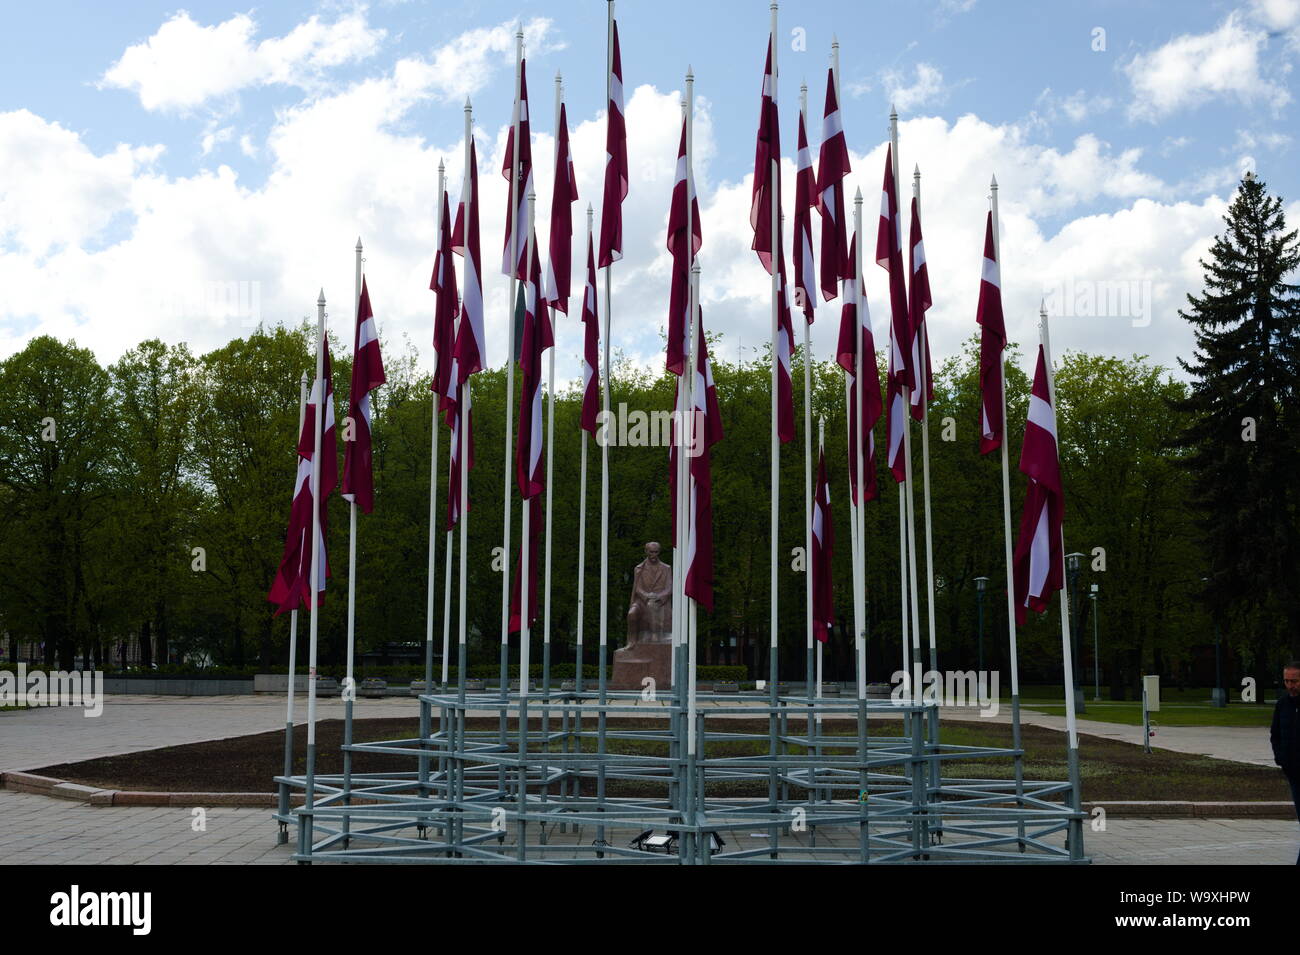 Banderas ondeando orgullosamente en honor del Día de la independencia de Letonia. Foto de stock